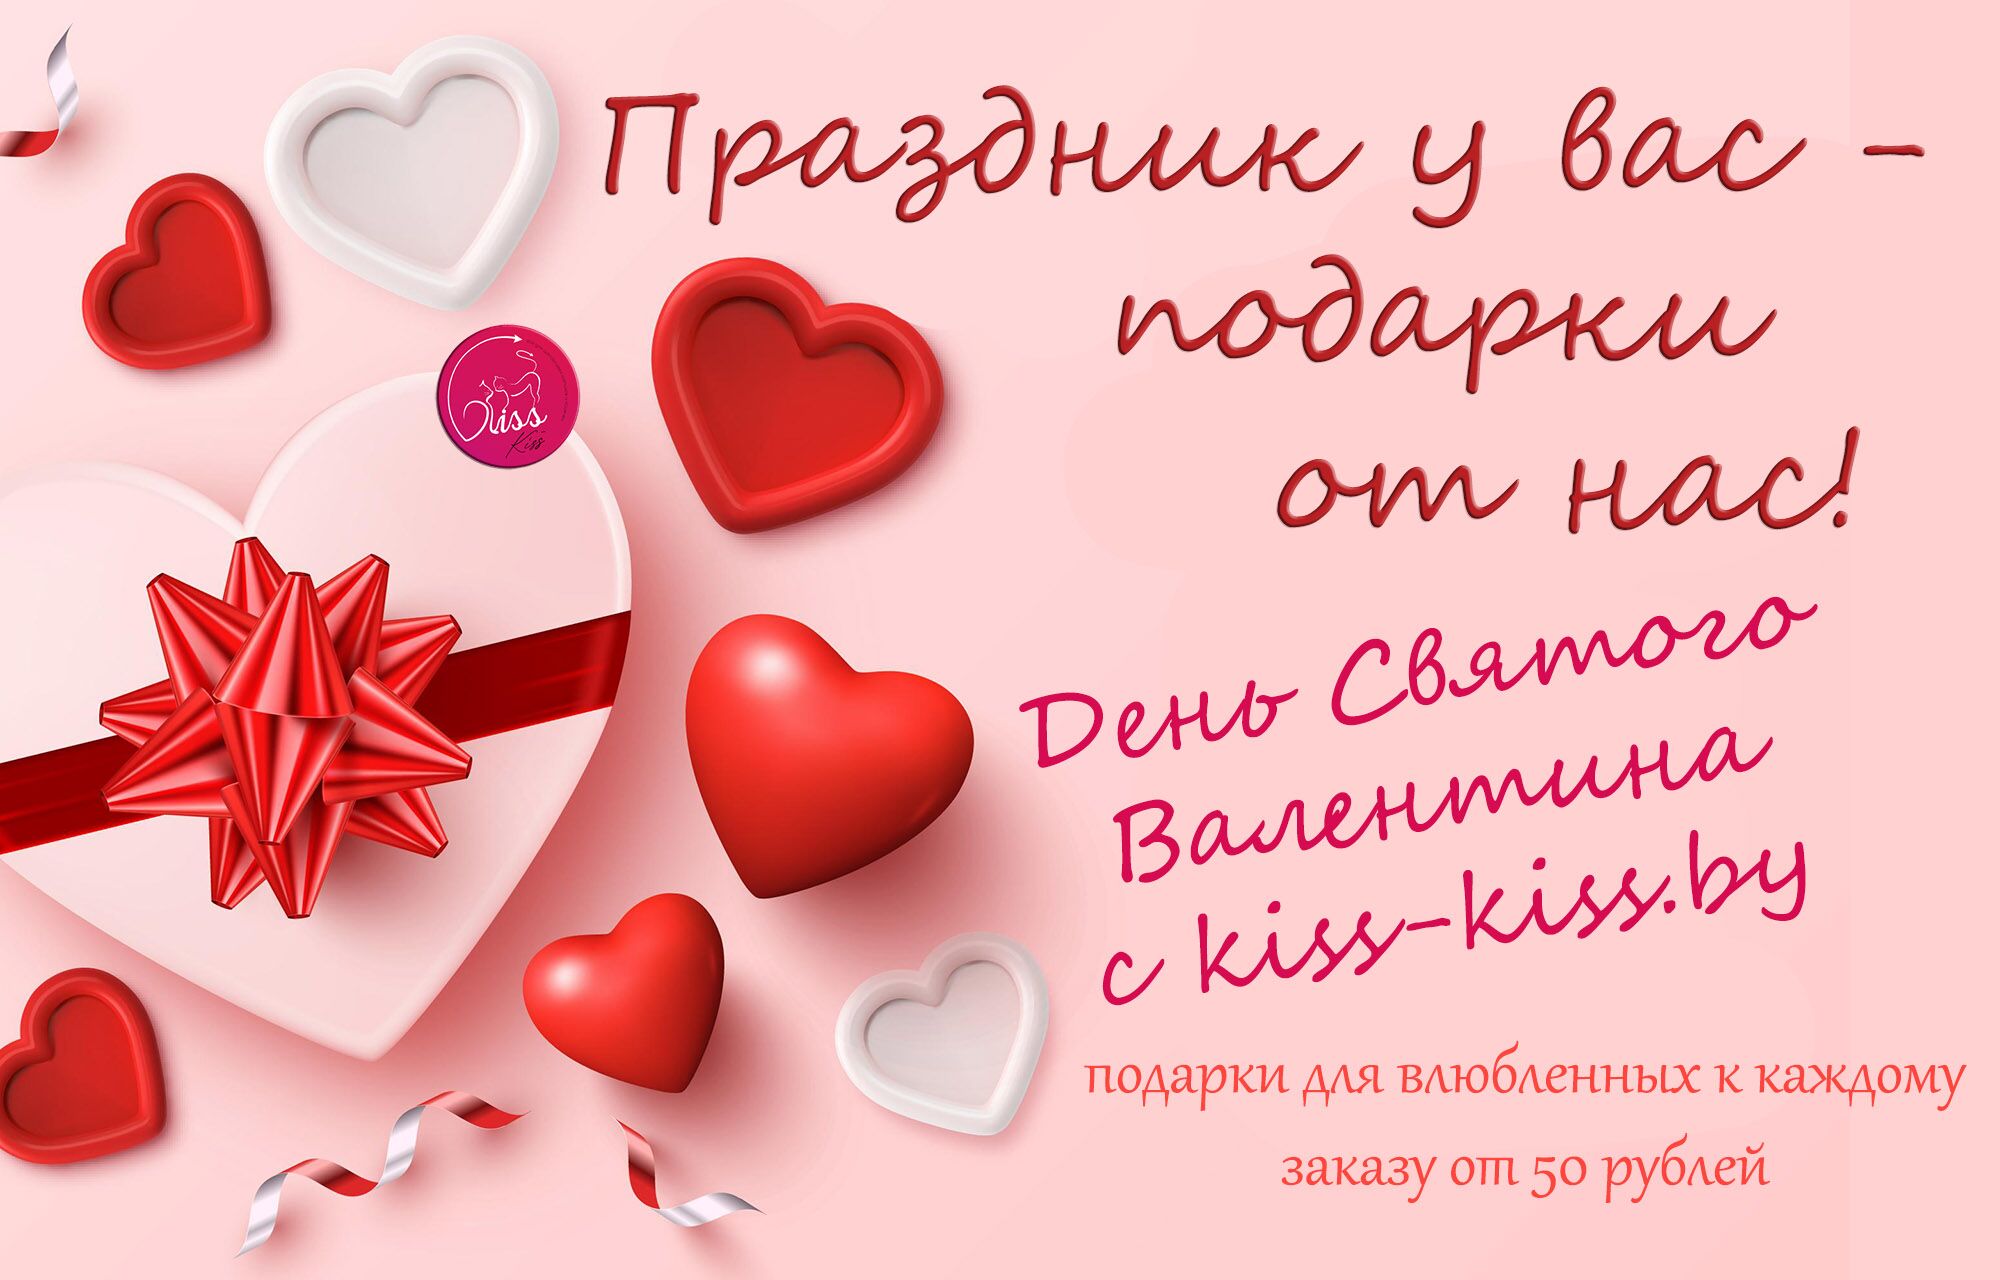 День Святого Валентина с kiss-kiss.by